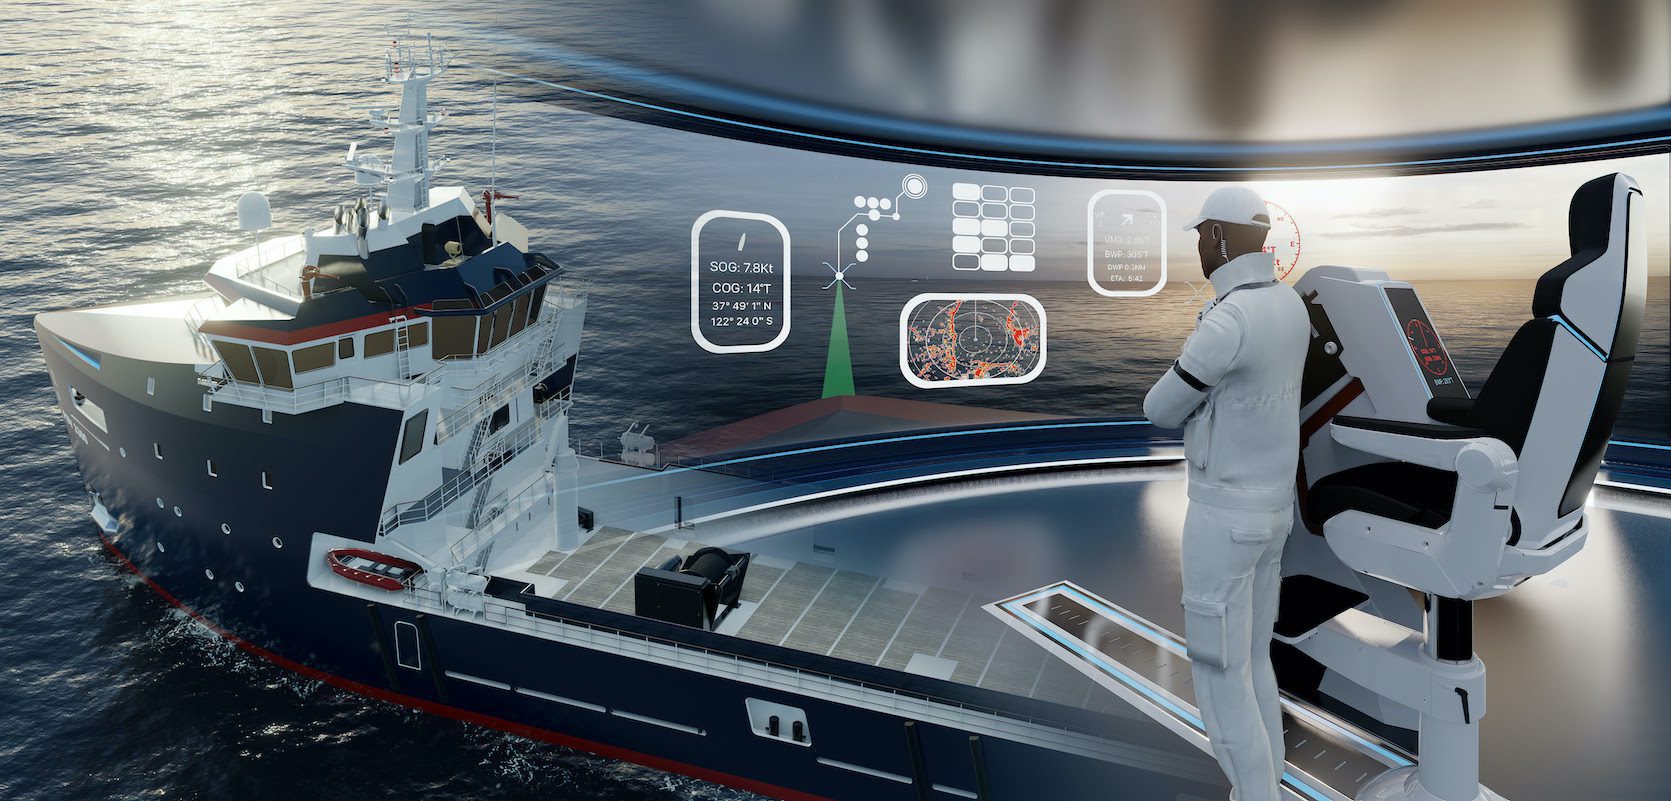 Sea Machines and Damen Form Alliance to Put Autonomous Tech in Newbuilds